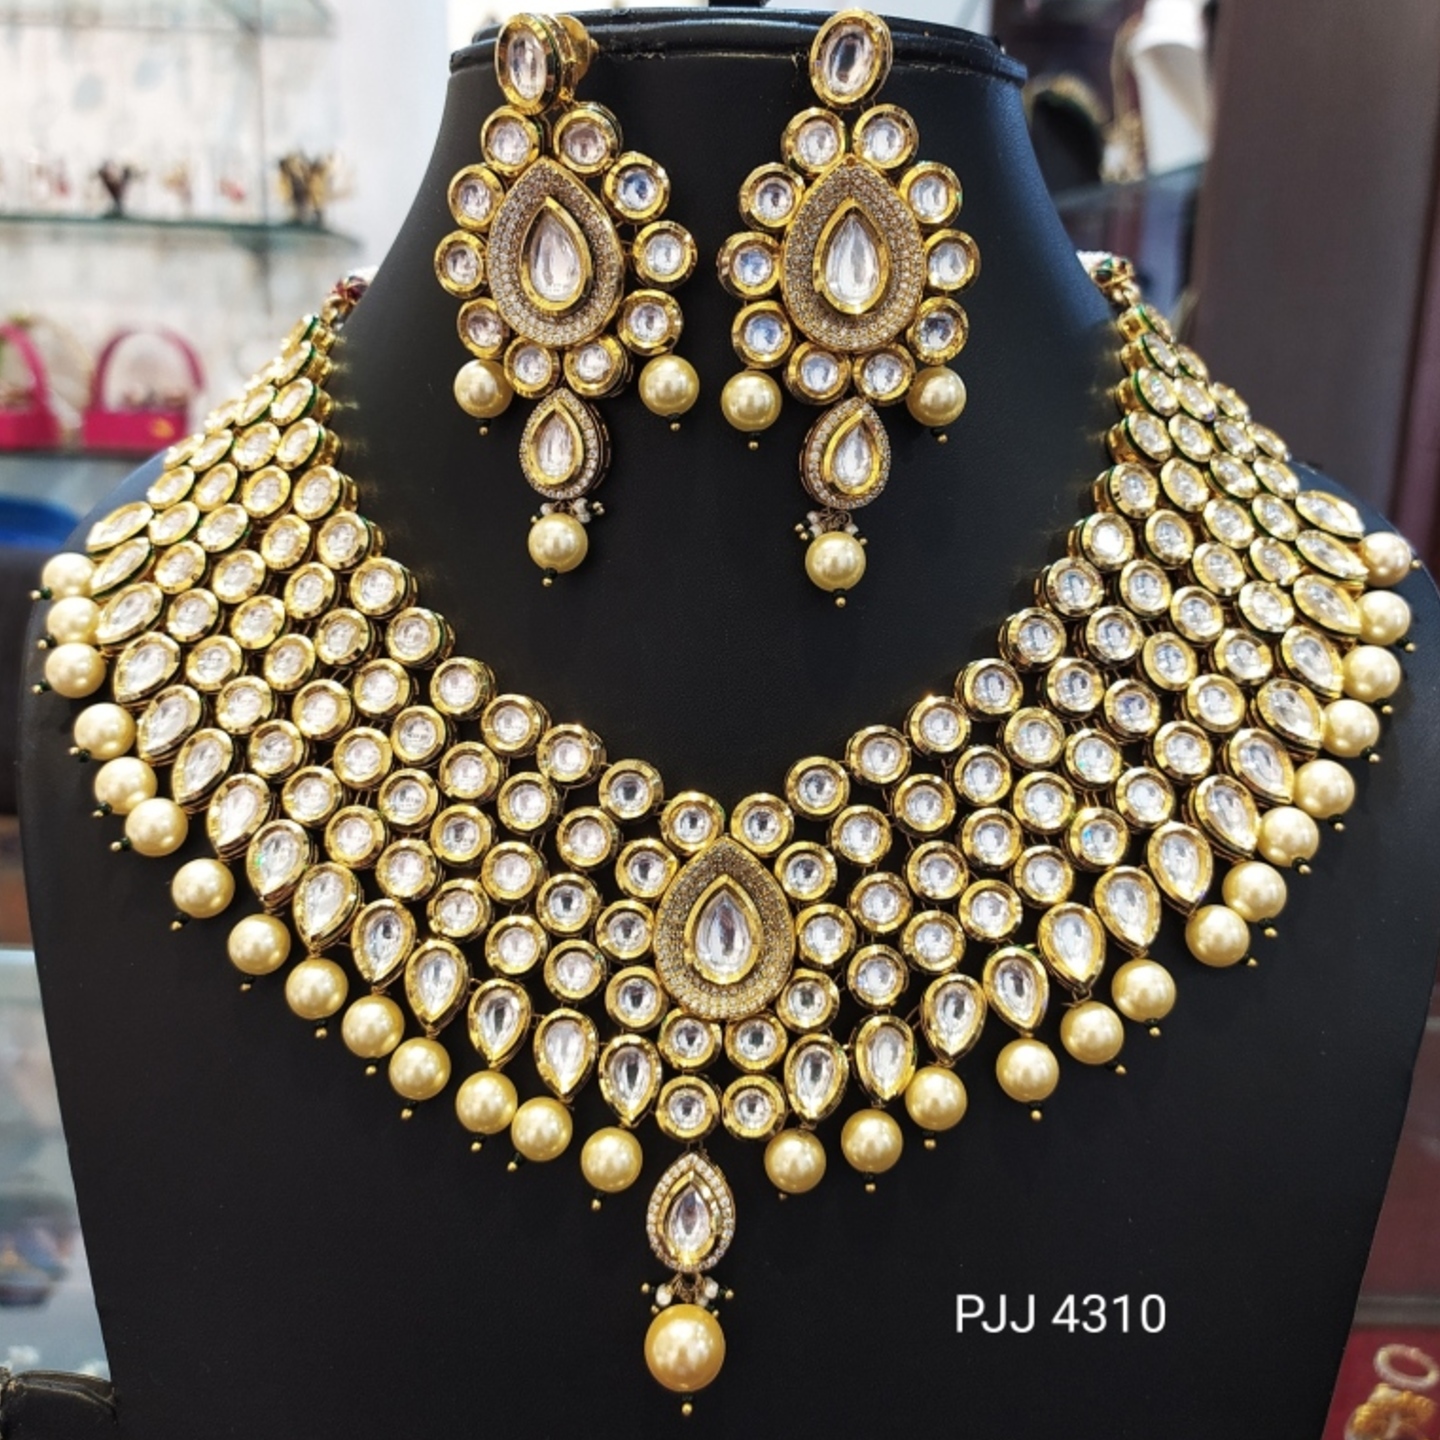 Kundan Meena Heavy Necklace Set with Pearl Drops 